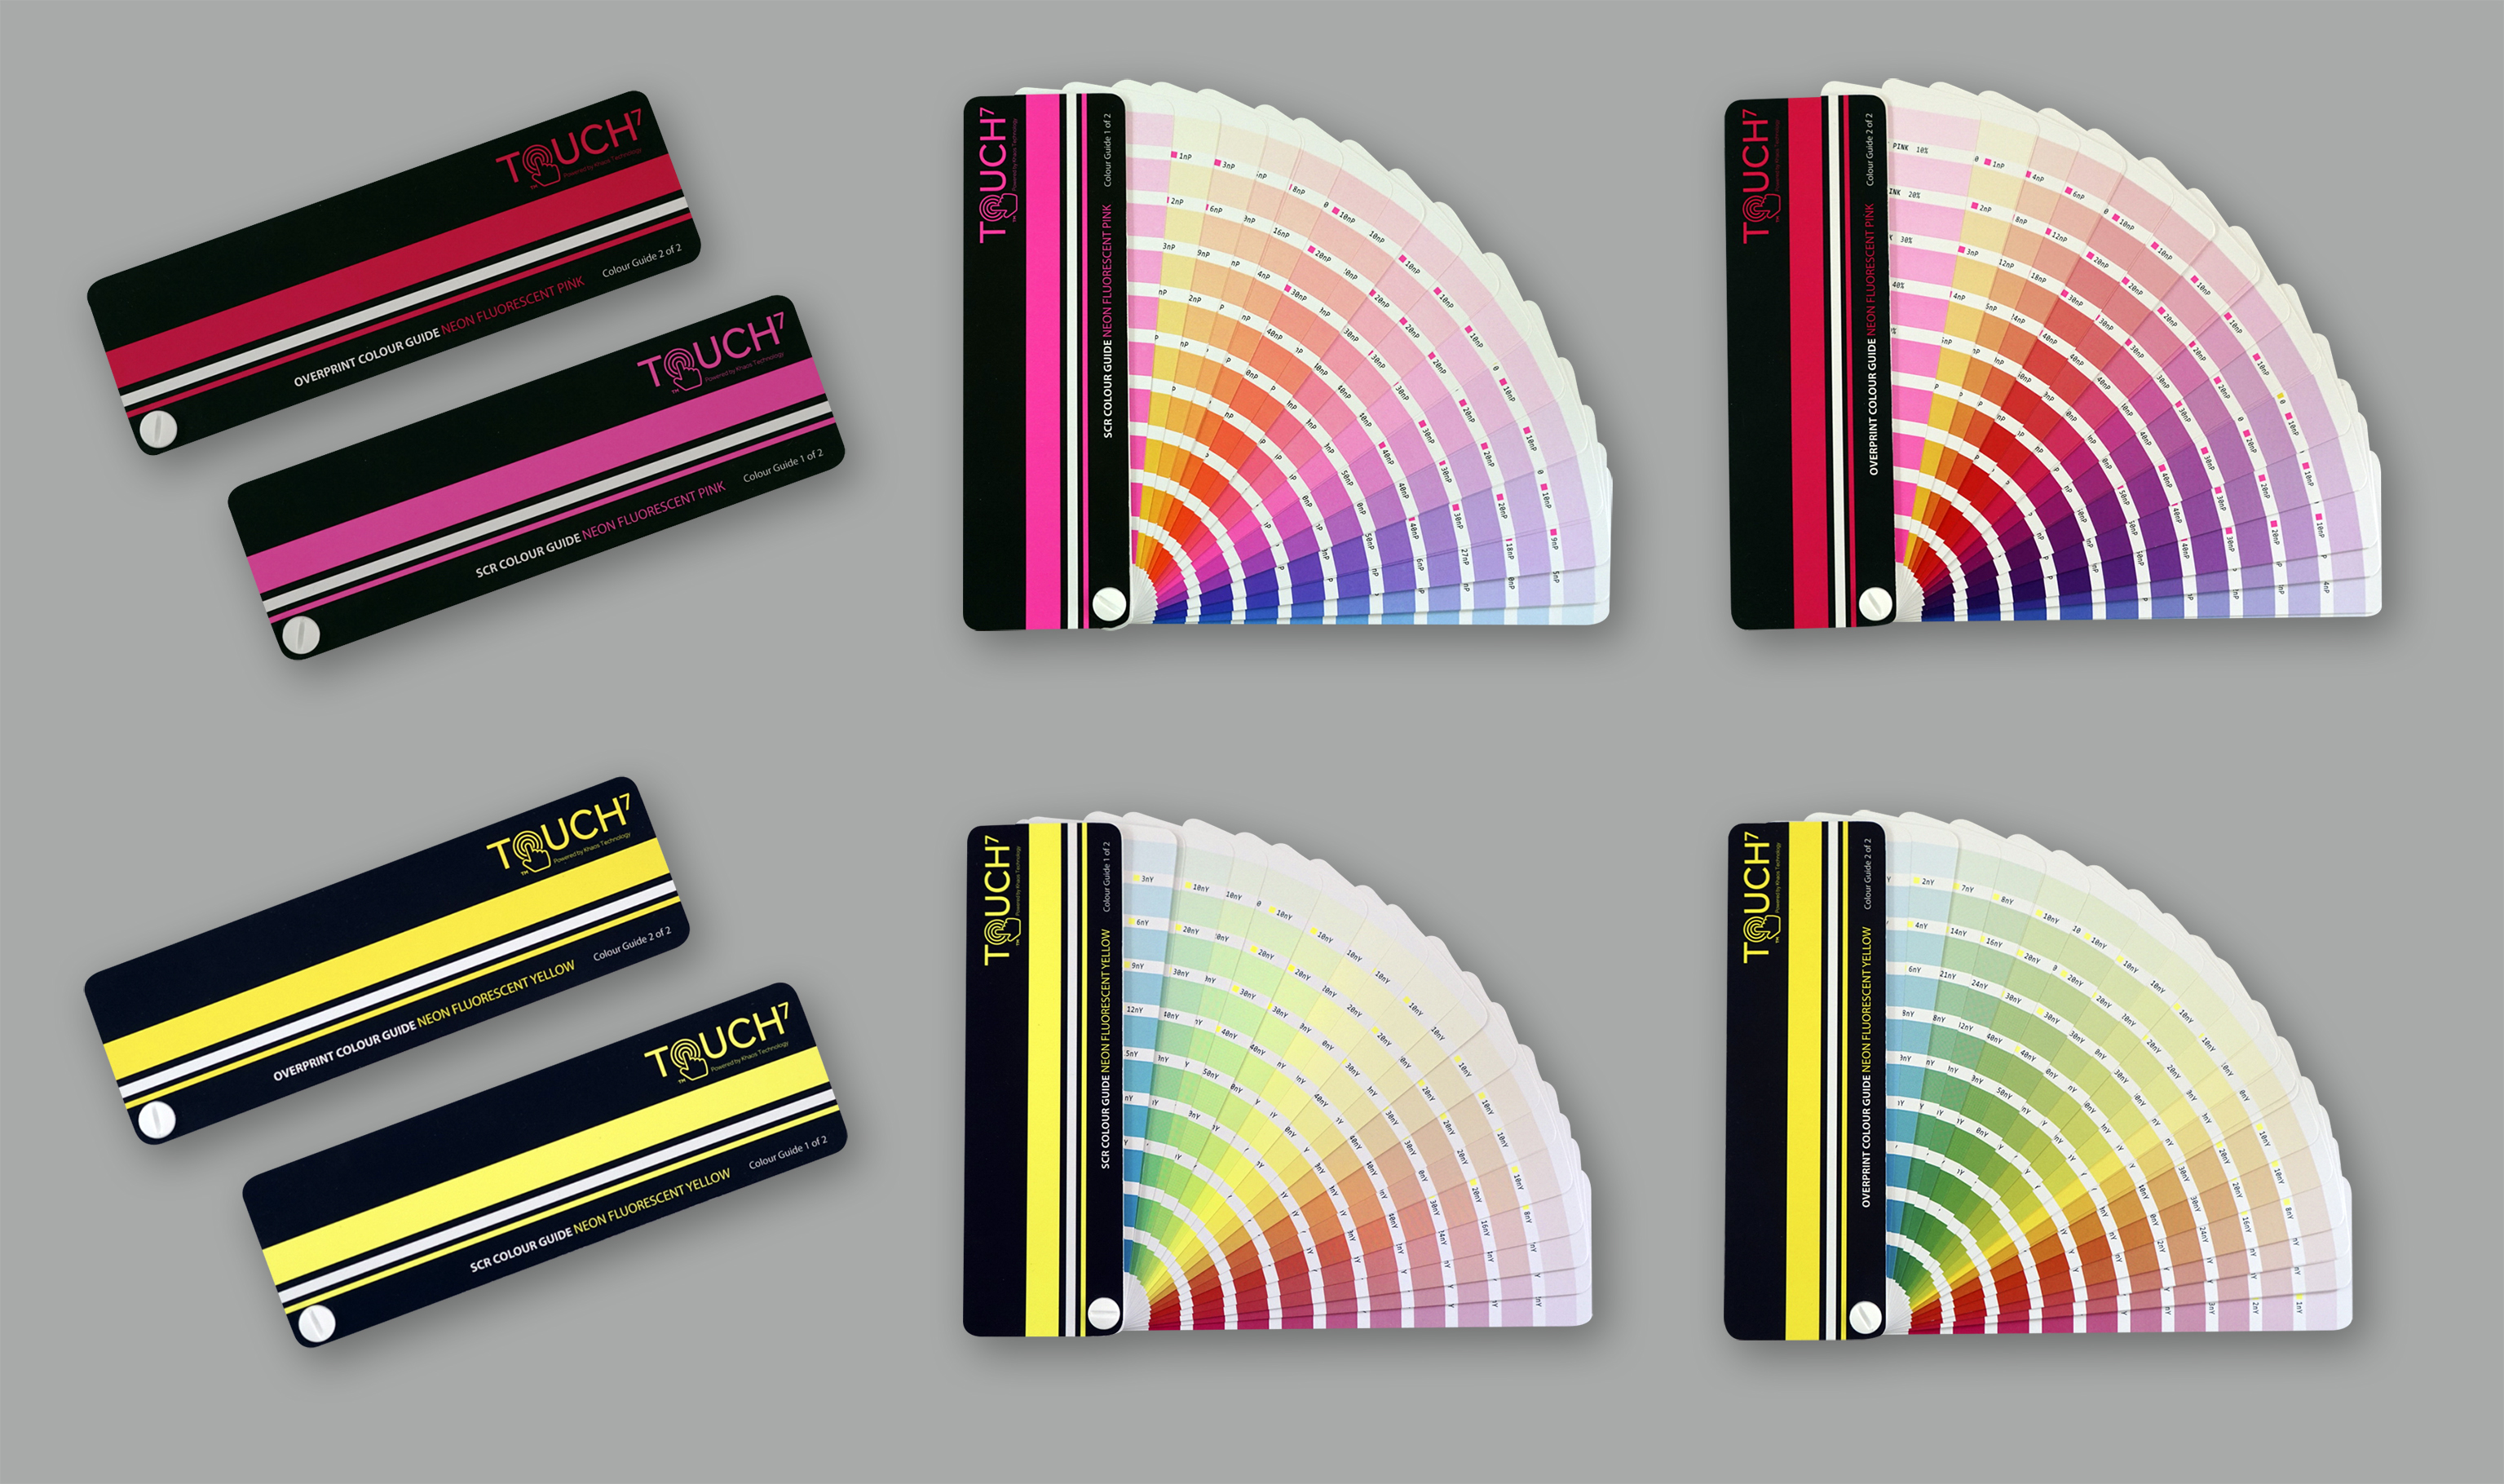 Neljä digitaalista Neon Touch7 -väriviuhkaa mahdollistavat 1520 värin tasaisen toiston.